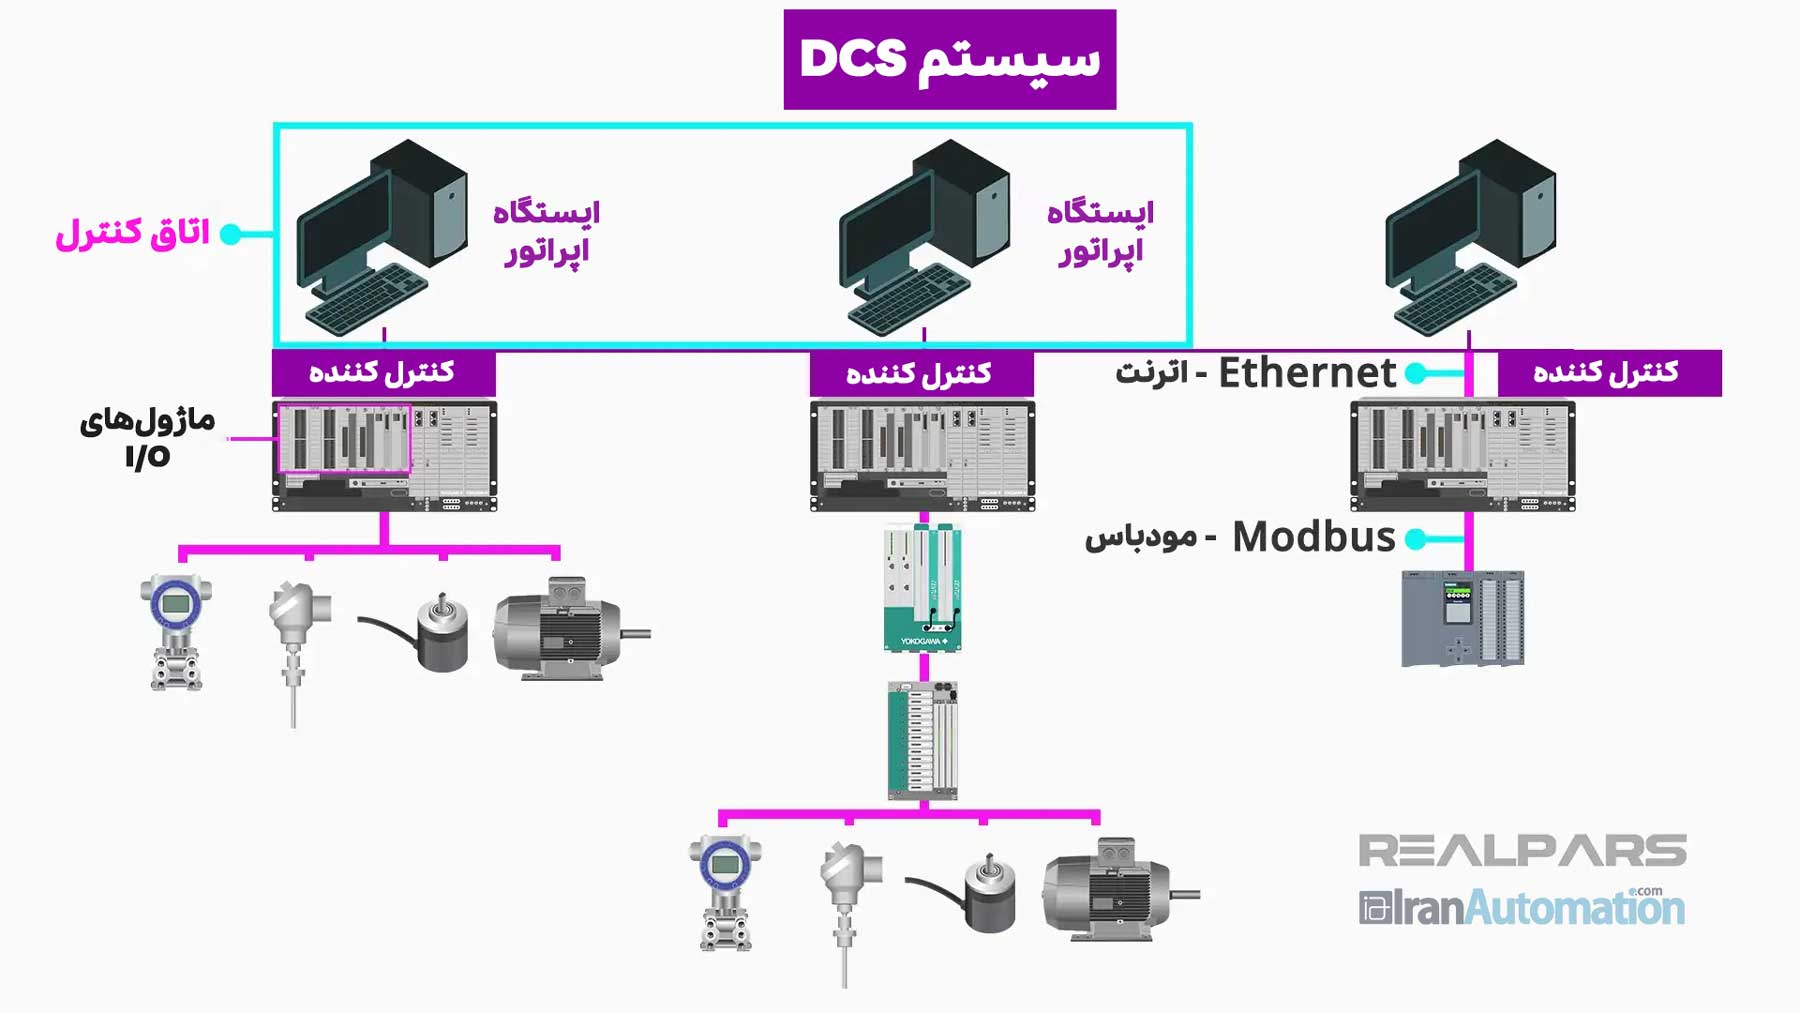 مولفه های اساسی DCS